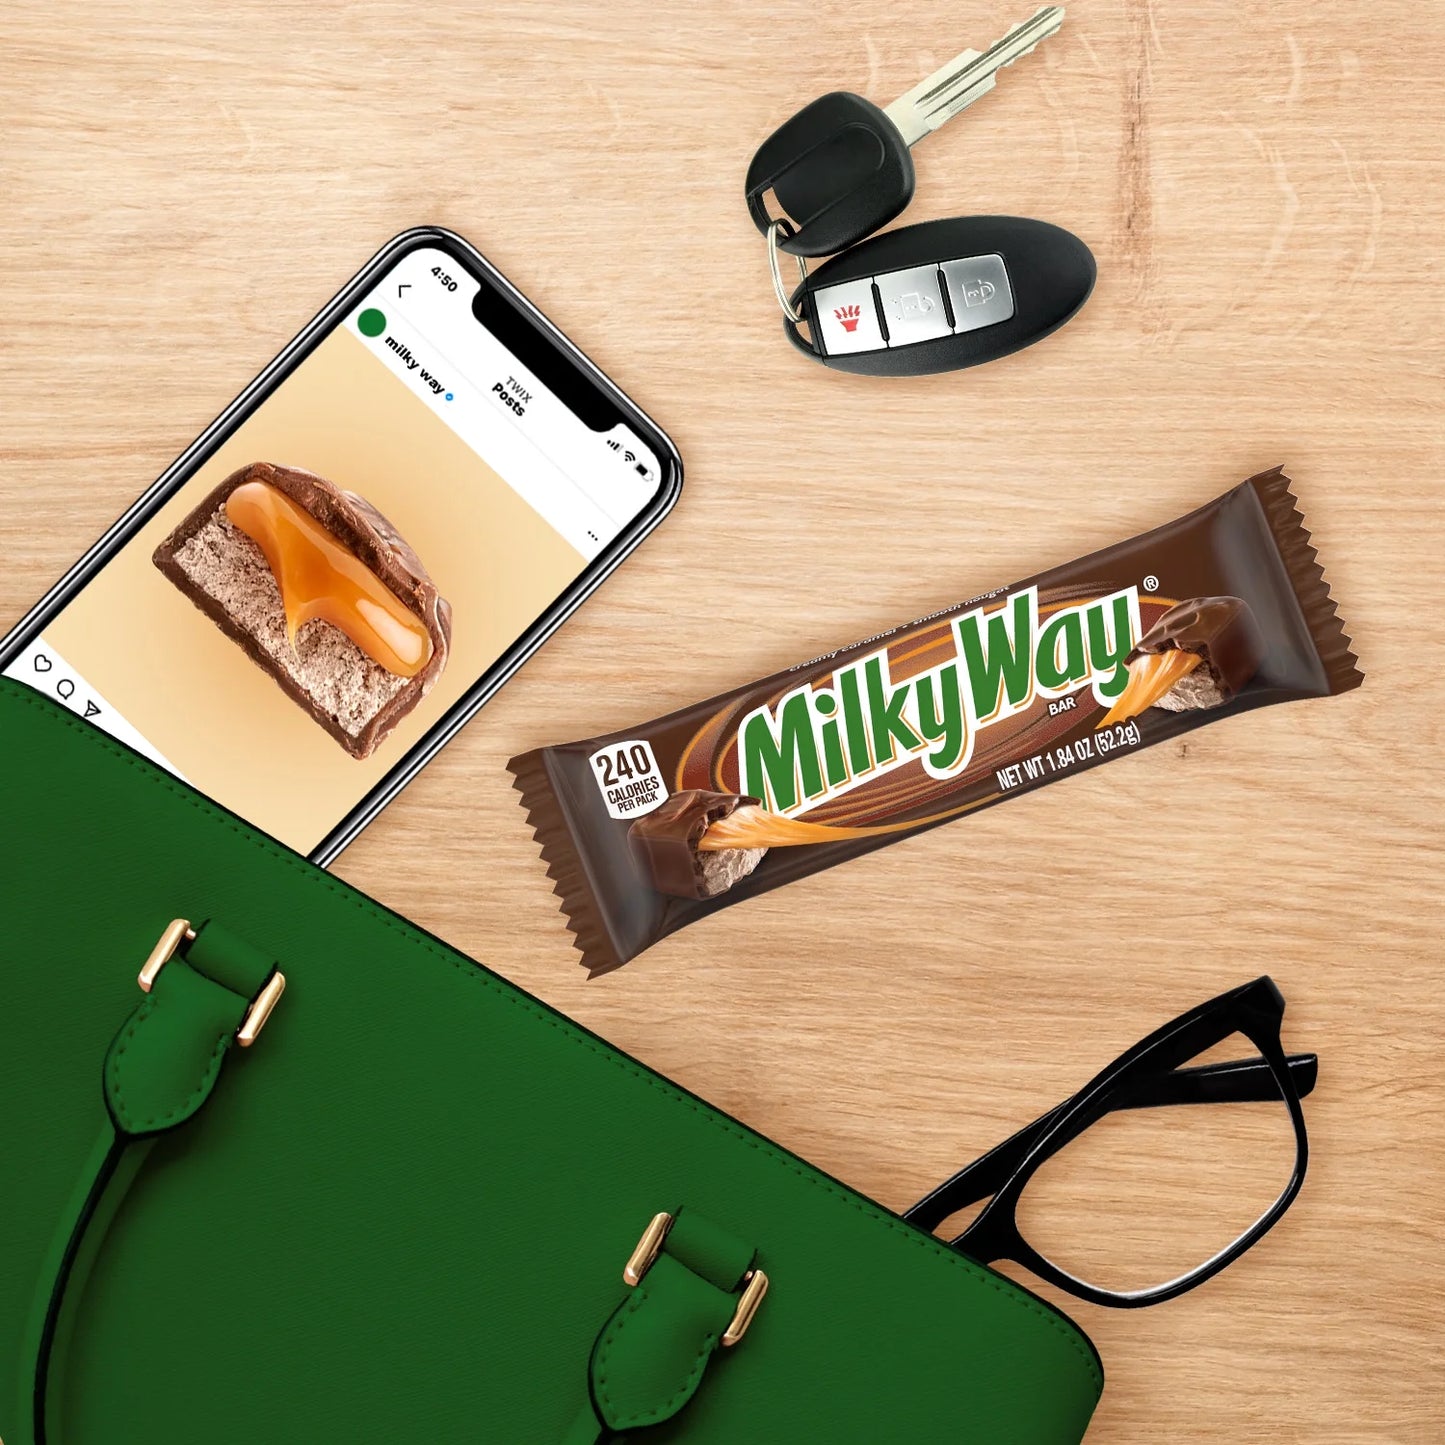 Milk Chocolate Candy Bar, Full Size - 1.84 Oz Bar